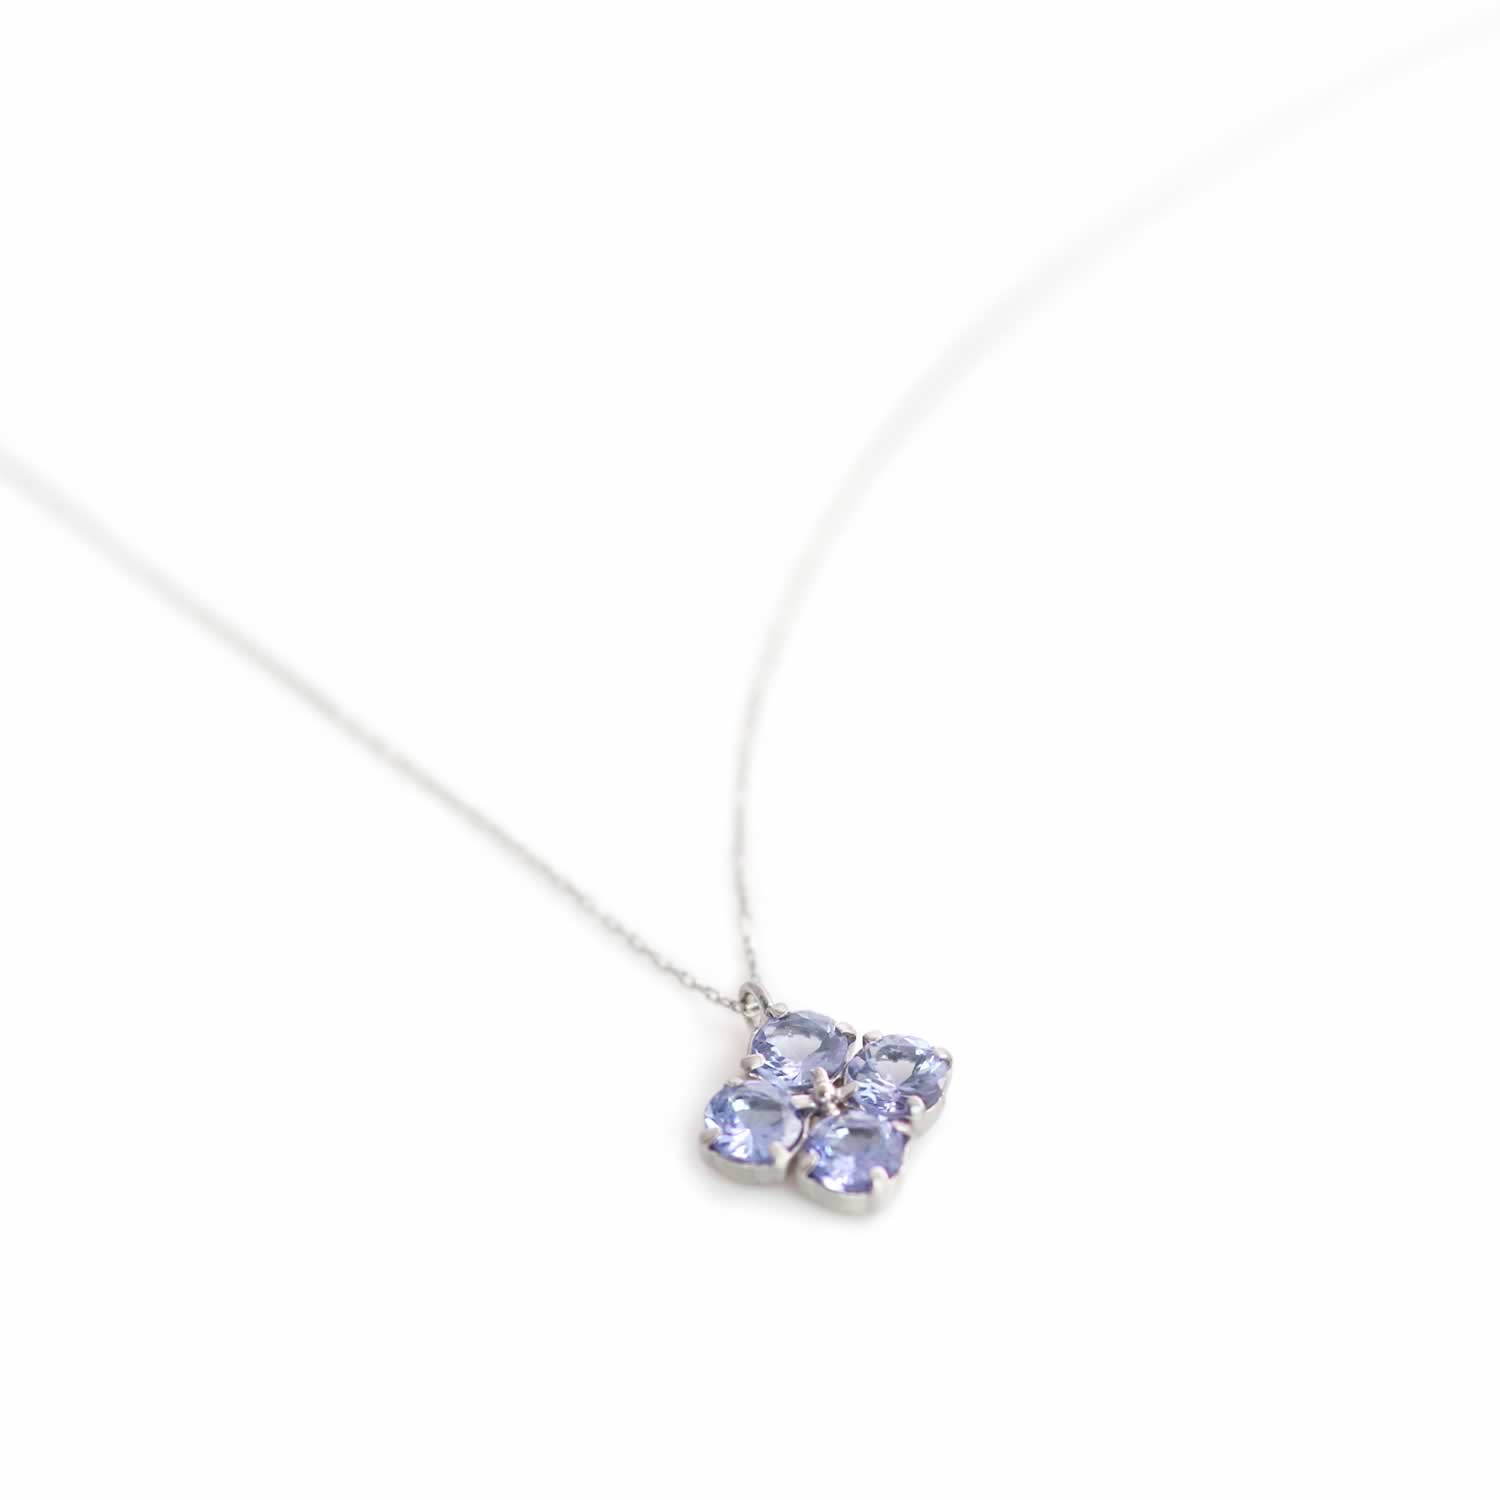 Pt900 タンザナイト 12月の誕生石 ネックレス プラチナ900 プレゼントに【JewelryROLA/ジュエリーローラ公式通販サイト】